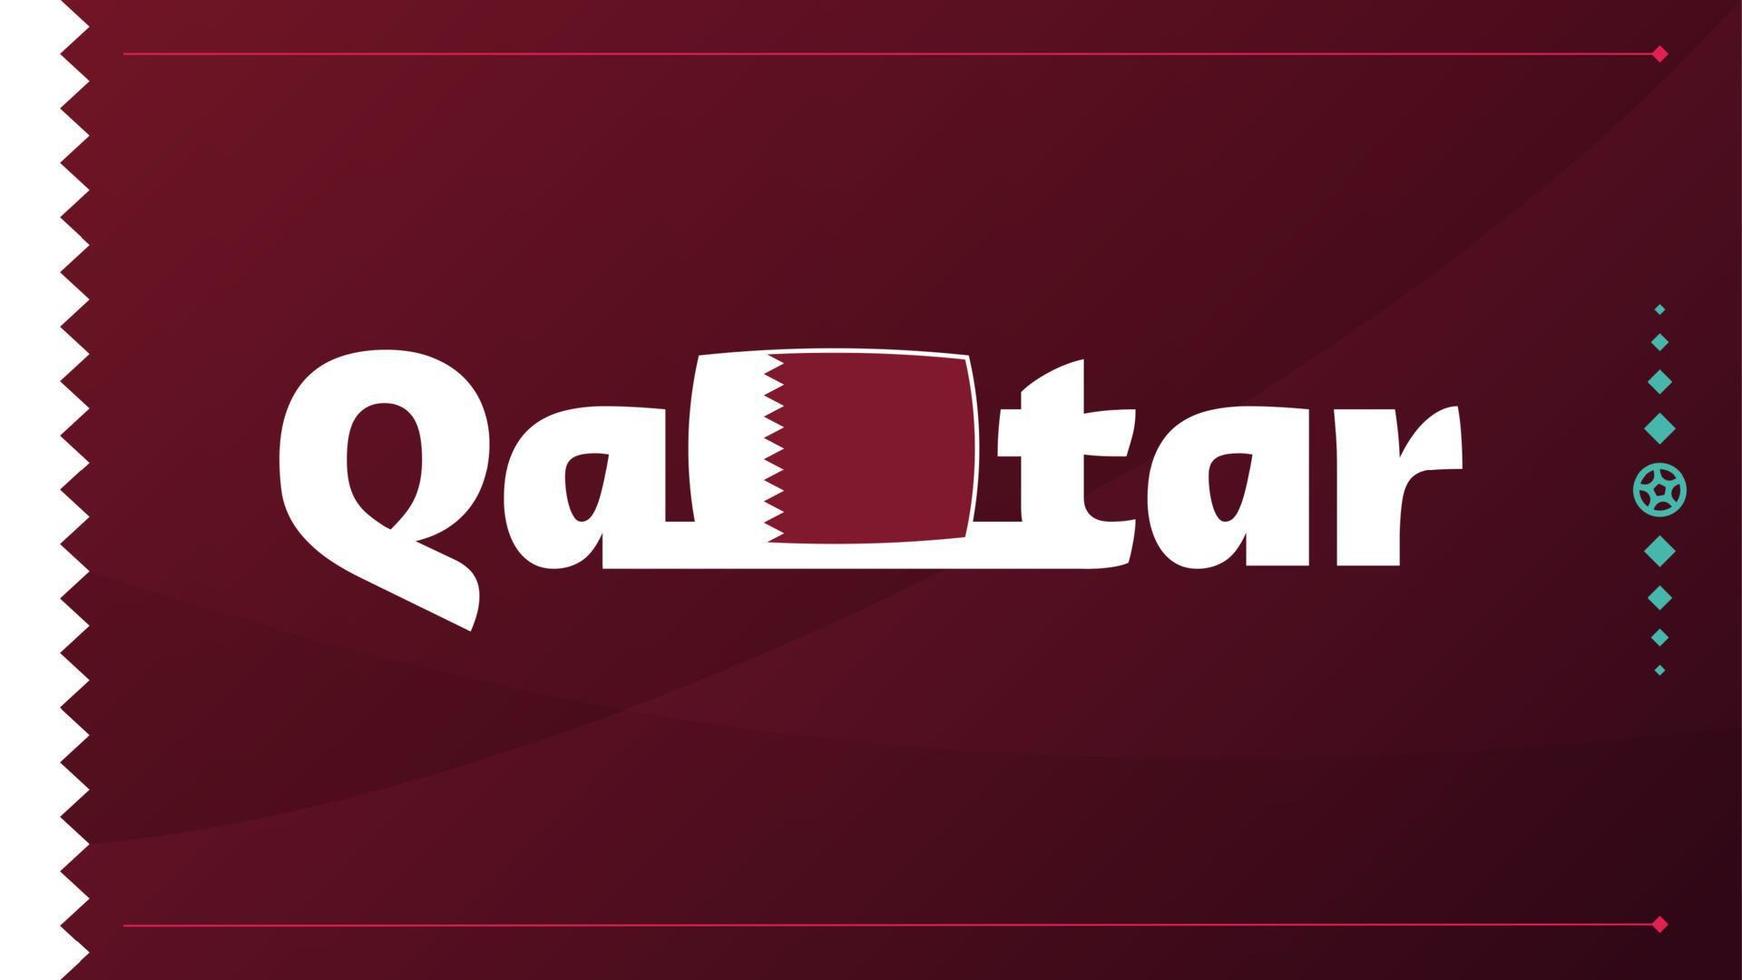 bandiera del qatar e testo sullo sfondo del torneo di calcio 2022. illustrazione vettoriale modello di calcio per banner, carta, sito web. colore bordeaux bandiera nazionale qatar